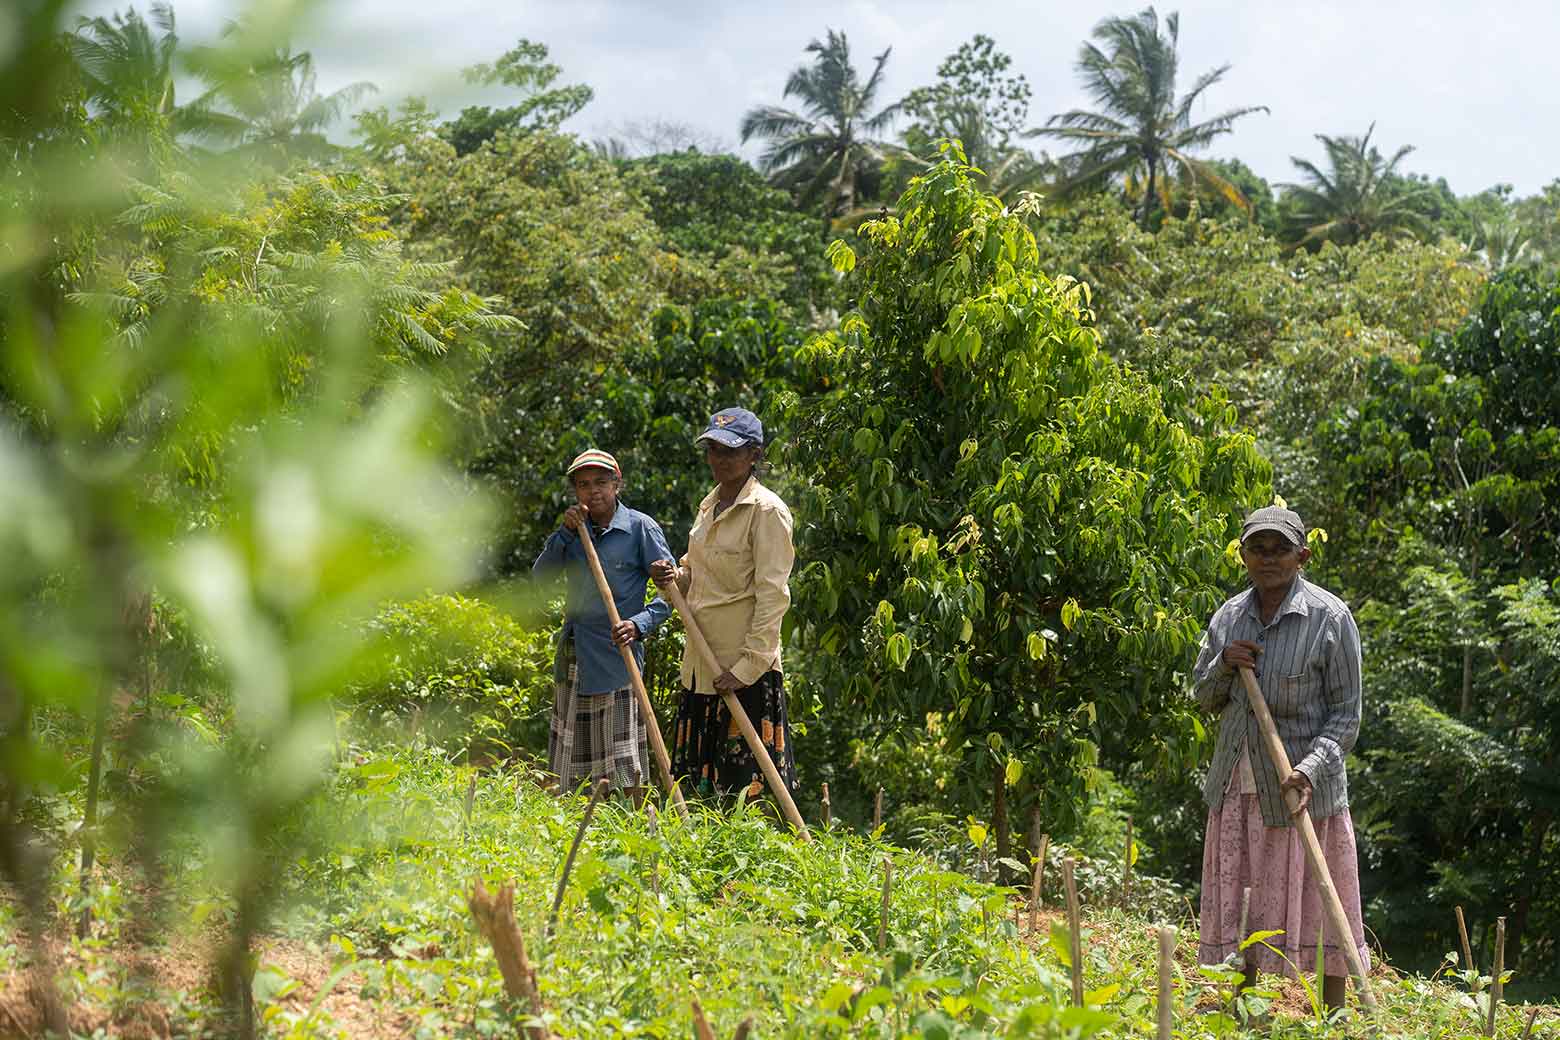 https://www.soulandsurf.com/wp-content/uploads/2022/04/Sri-LankaRetreat-images-@lesleywiggles_Tea-estate-workers.jpg